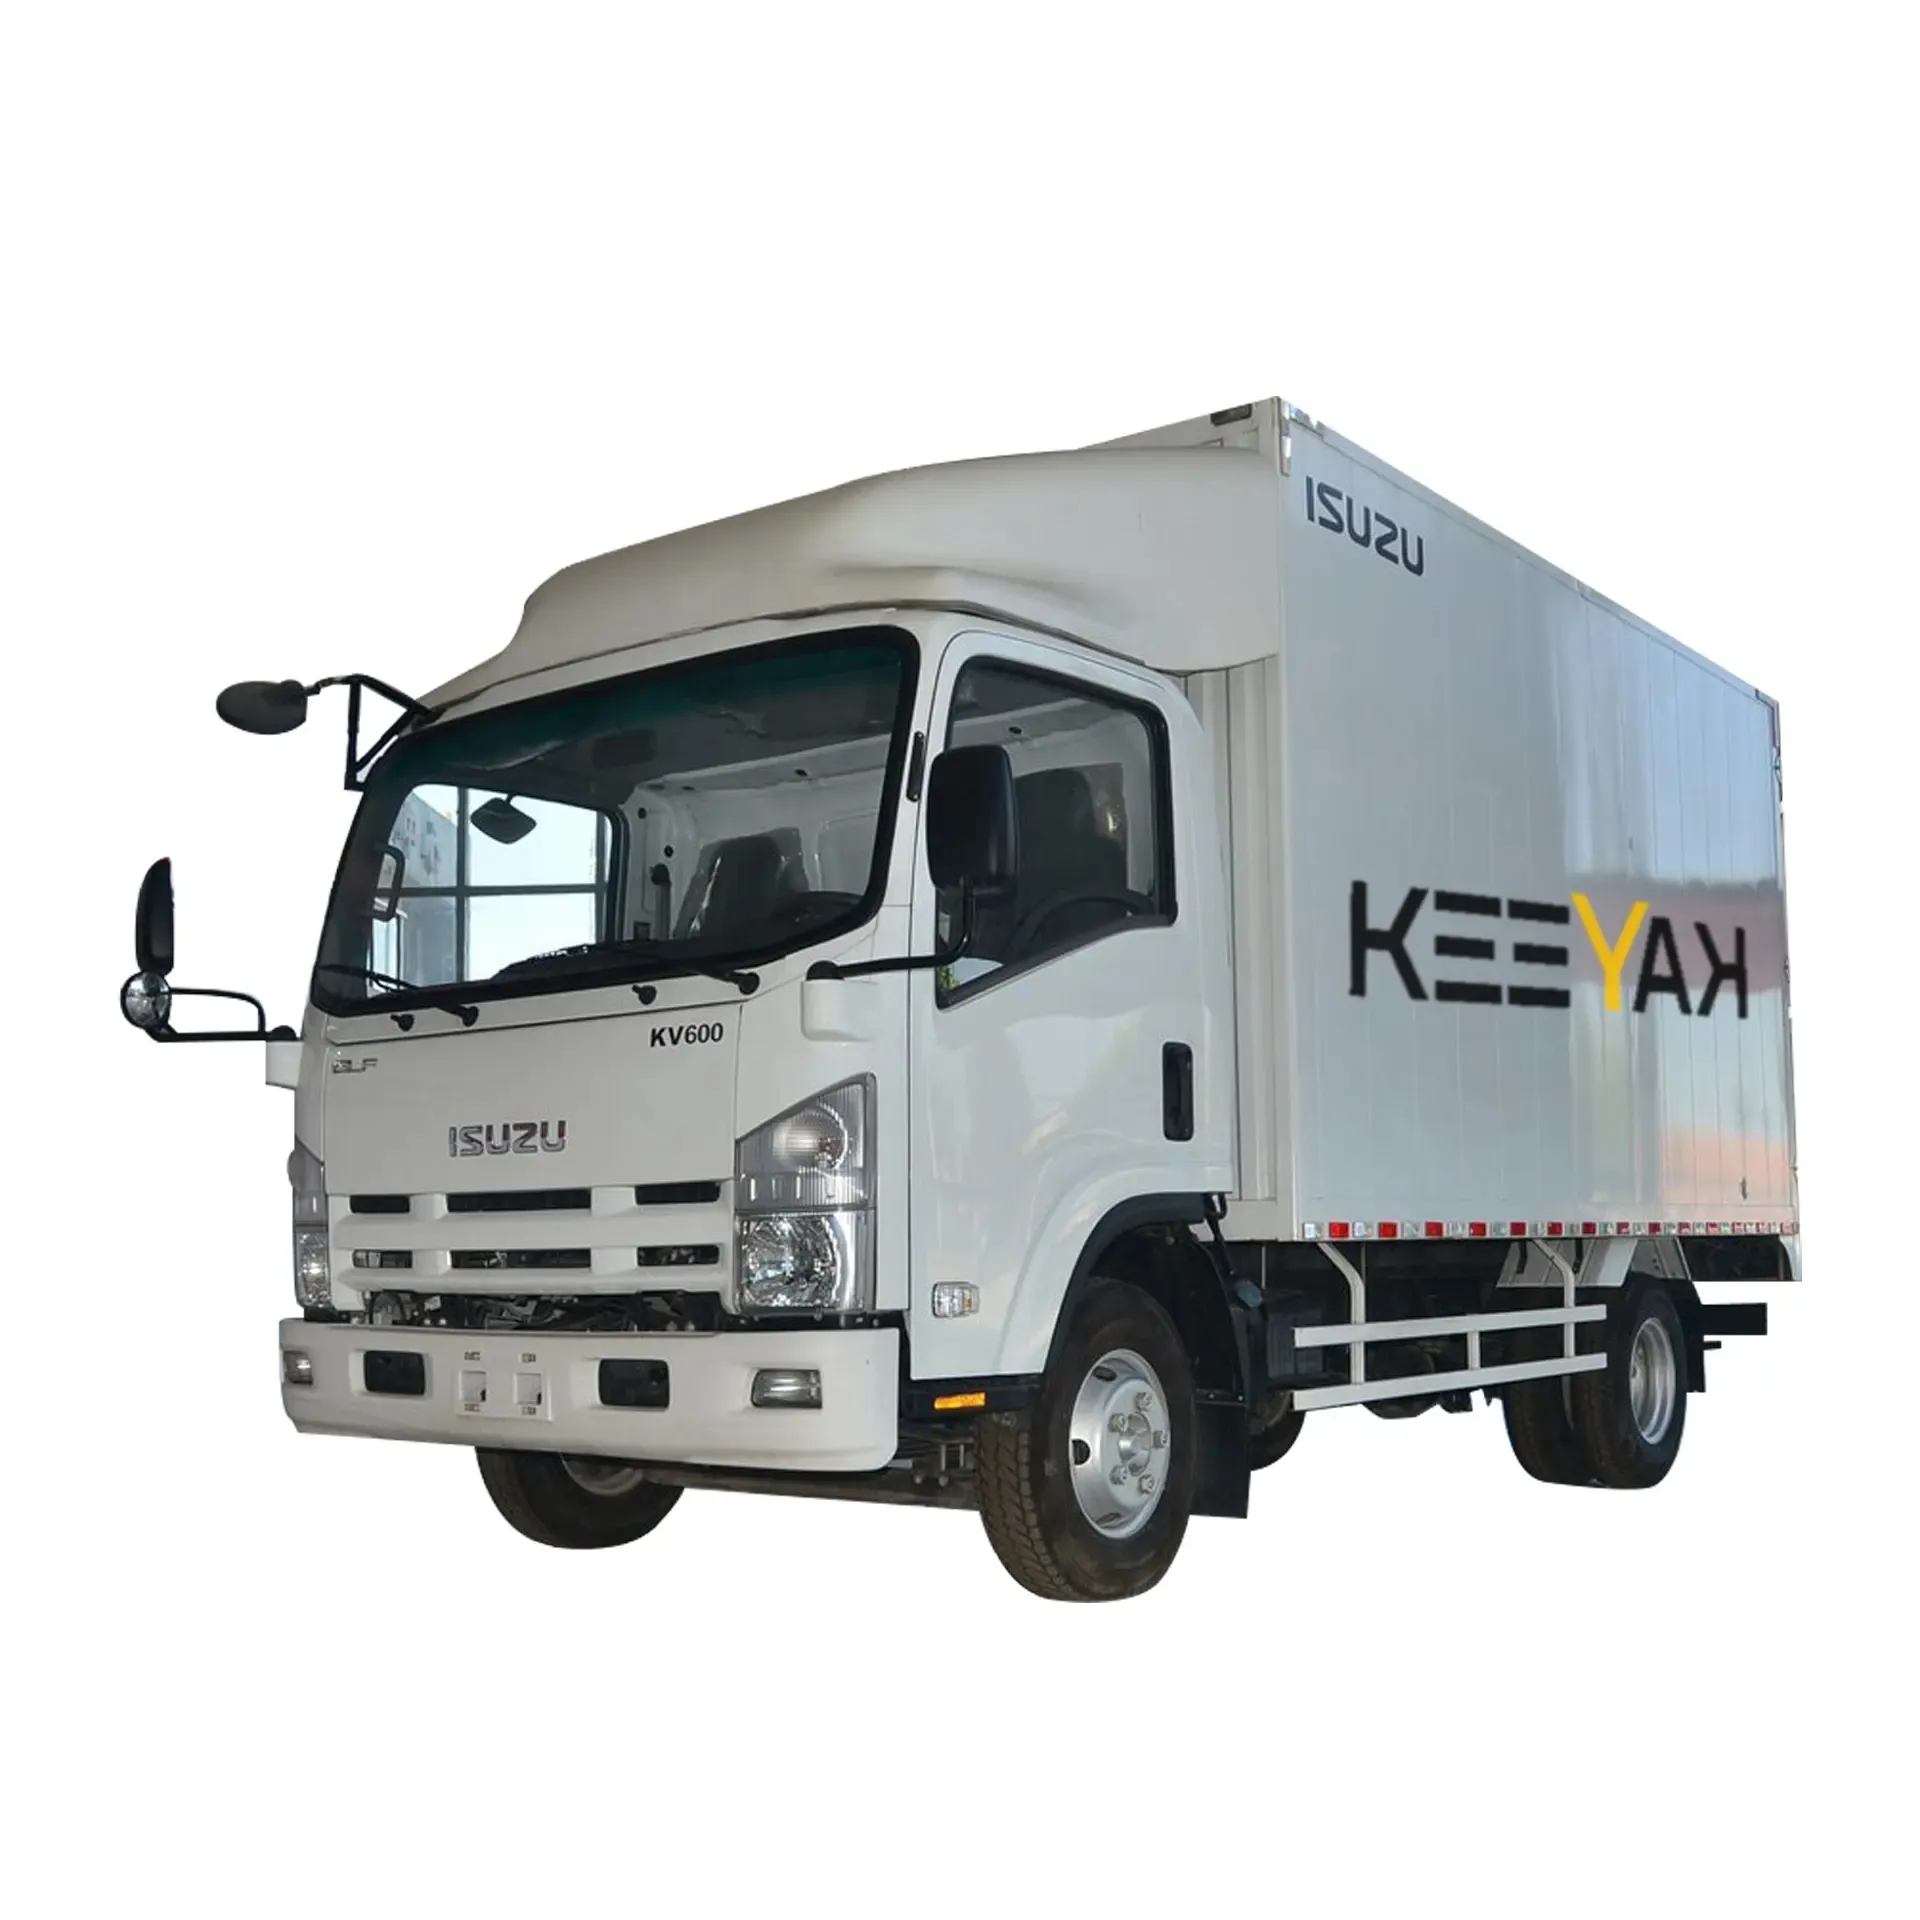 شاحنة صغيرة ISUZU لنقل البضائع 4x2 شاحنة بإطارات 2.9 متر شاحنة صغيرة مع 7 ركاب شاحنة صغيرة للبيع